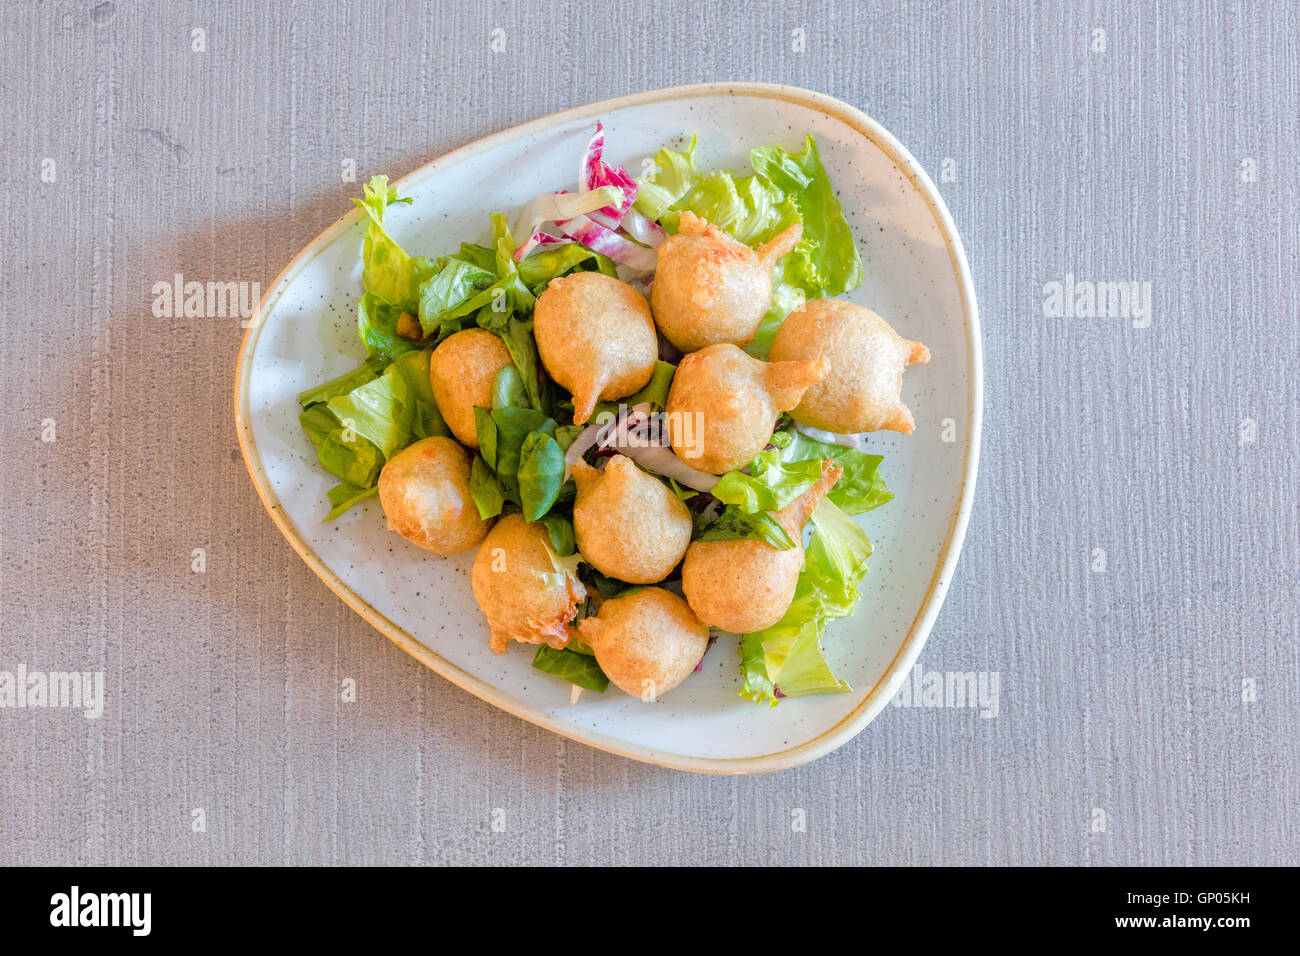 Une assiette de crêpes de sarrasin typiques de la Valteline appelé Sciatt faite avec des ingrédients locaux frais Lombardie Italie Banque D'Images